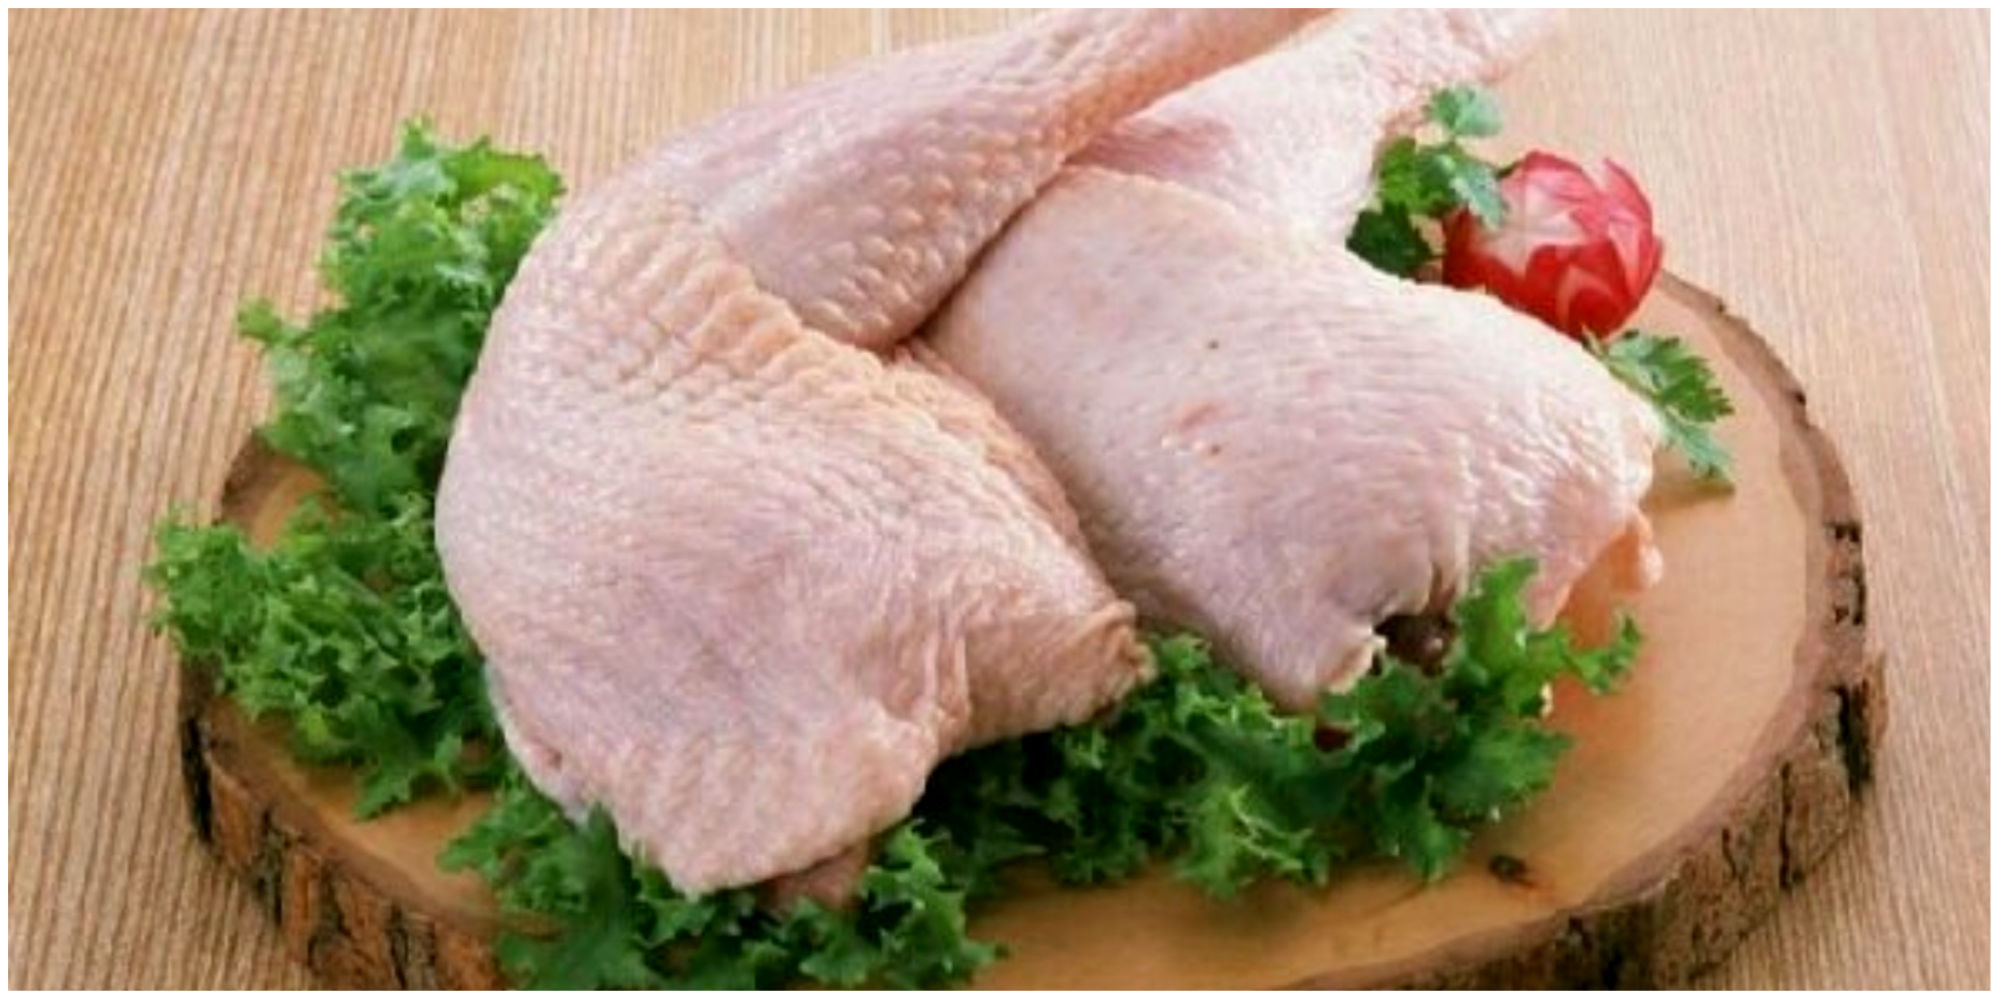 قیمت جدید گوشت مرغ در آینده نزدیک اعلام شد!